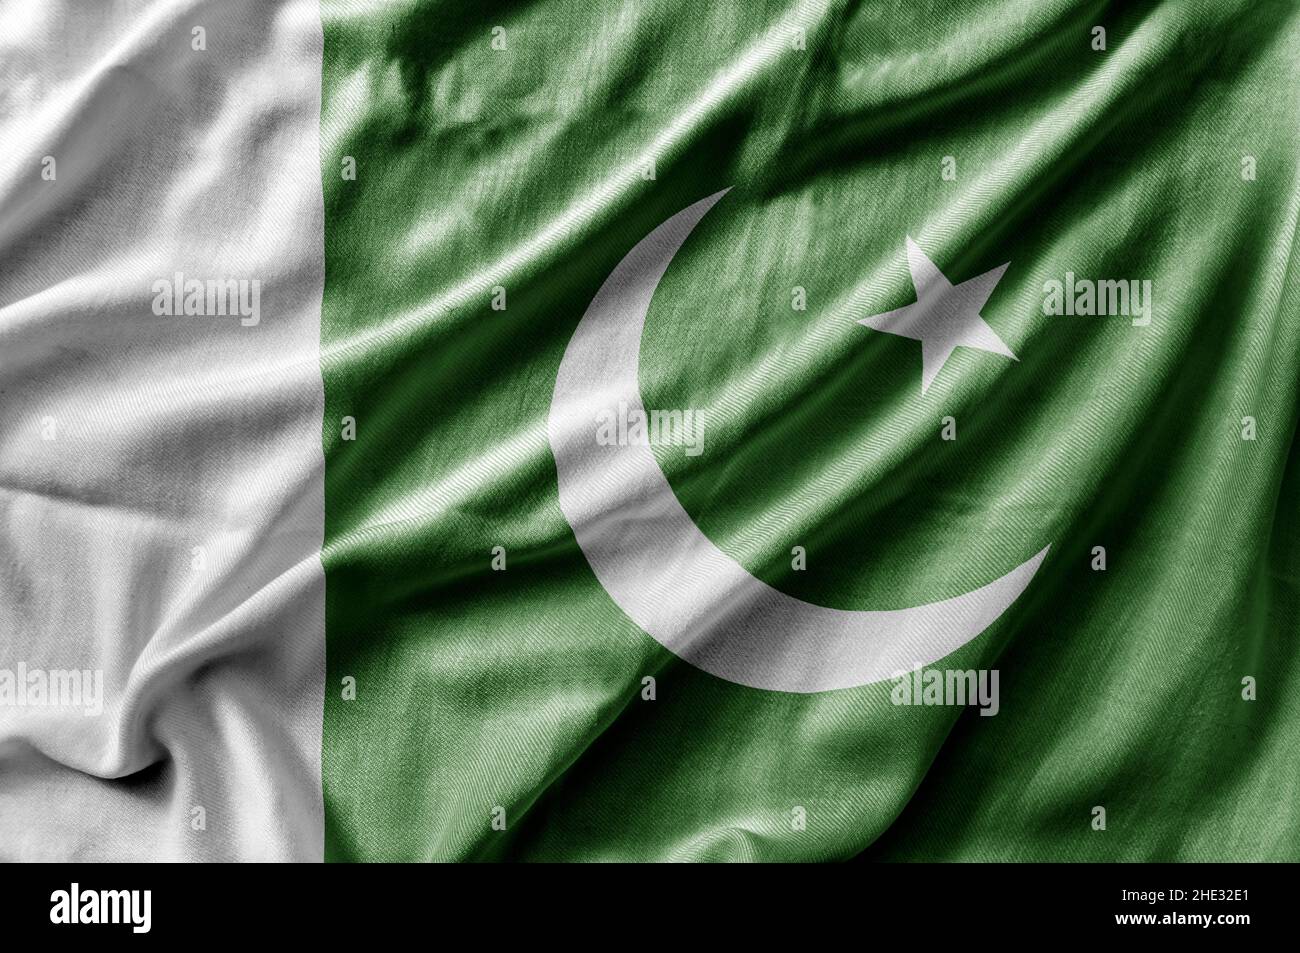 PAKISTANI FLAGS LARGE SIZE 26x36 SHINY SILK FABRIC 